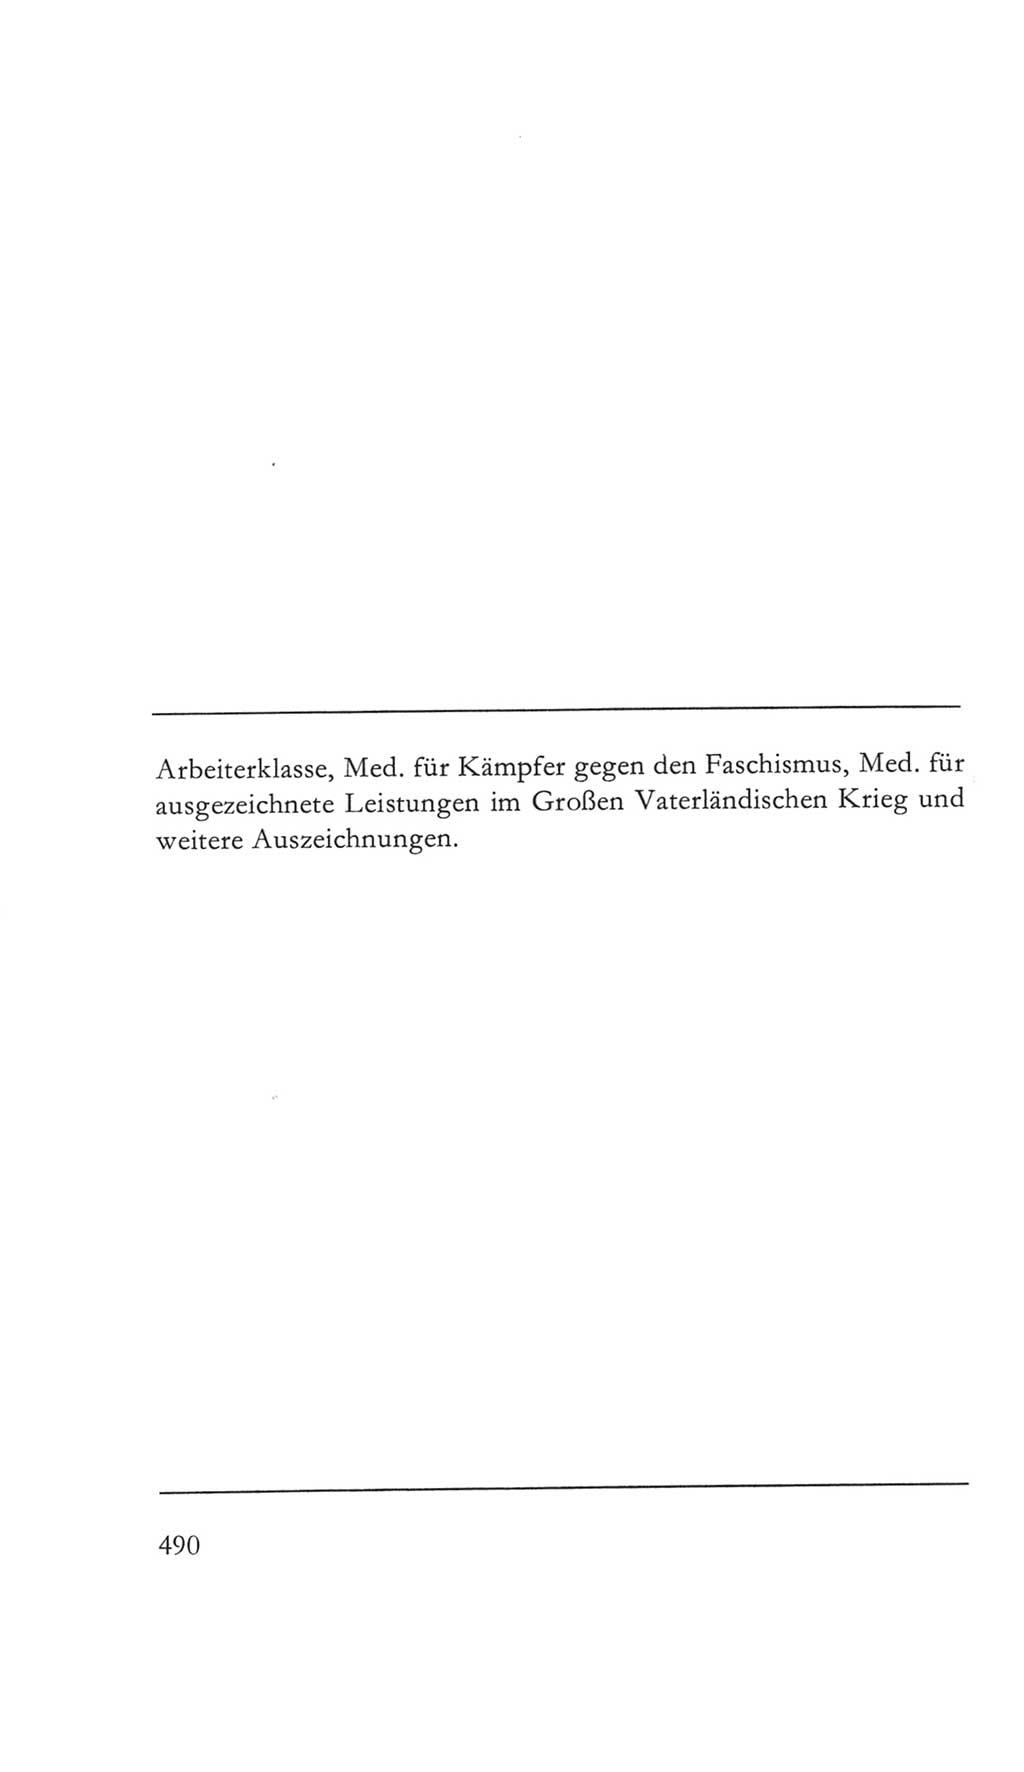 Volkskammer (VK) der Deutschen Demokratischen Republik (DDR) 5. Wahlperiode 1967-1971, Seite 490 (VK. DDR 5. WP. 1967-1971, S. 490)